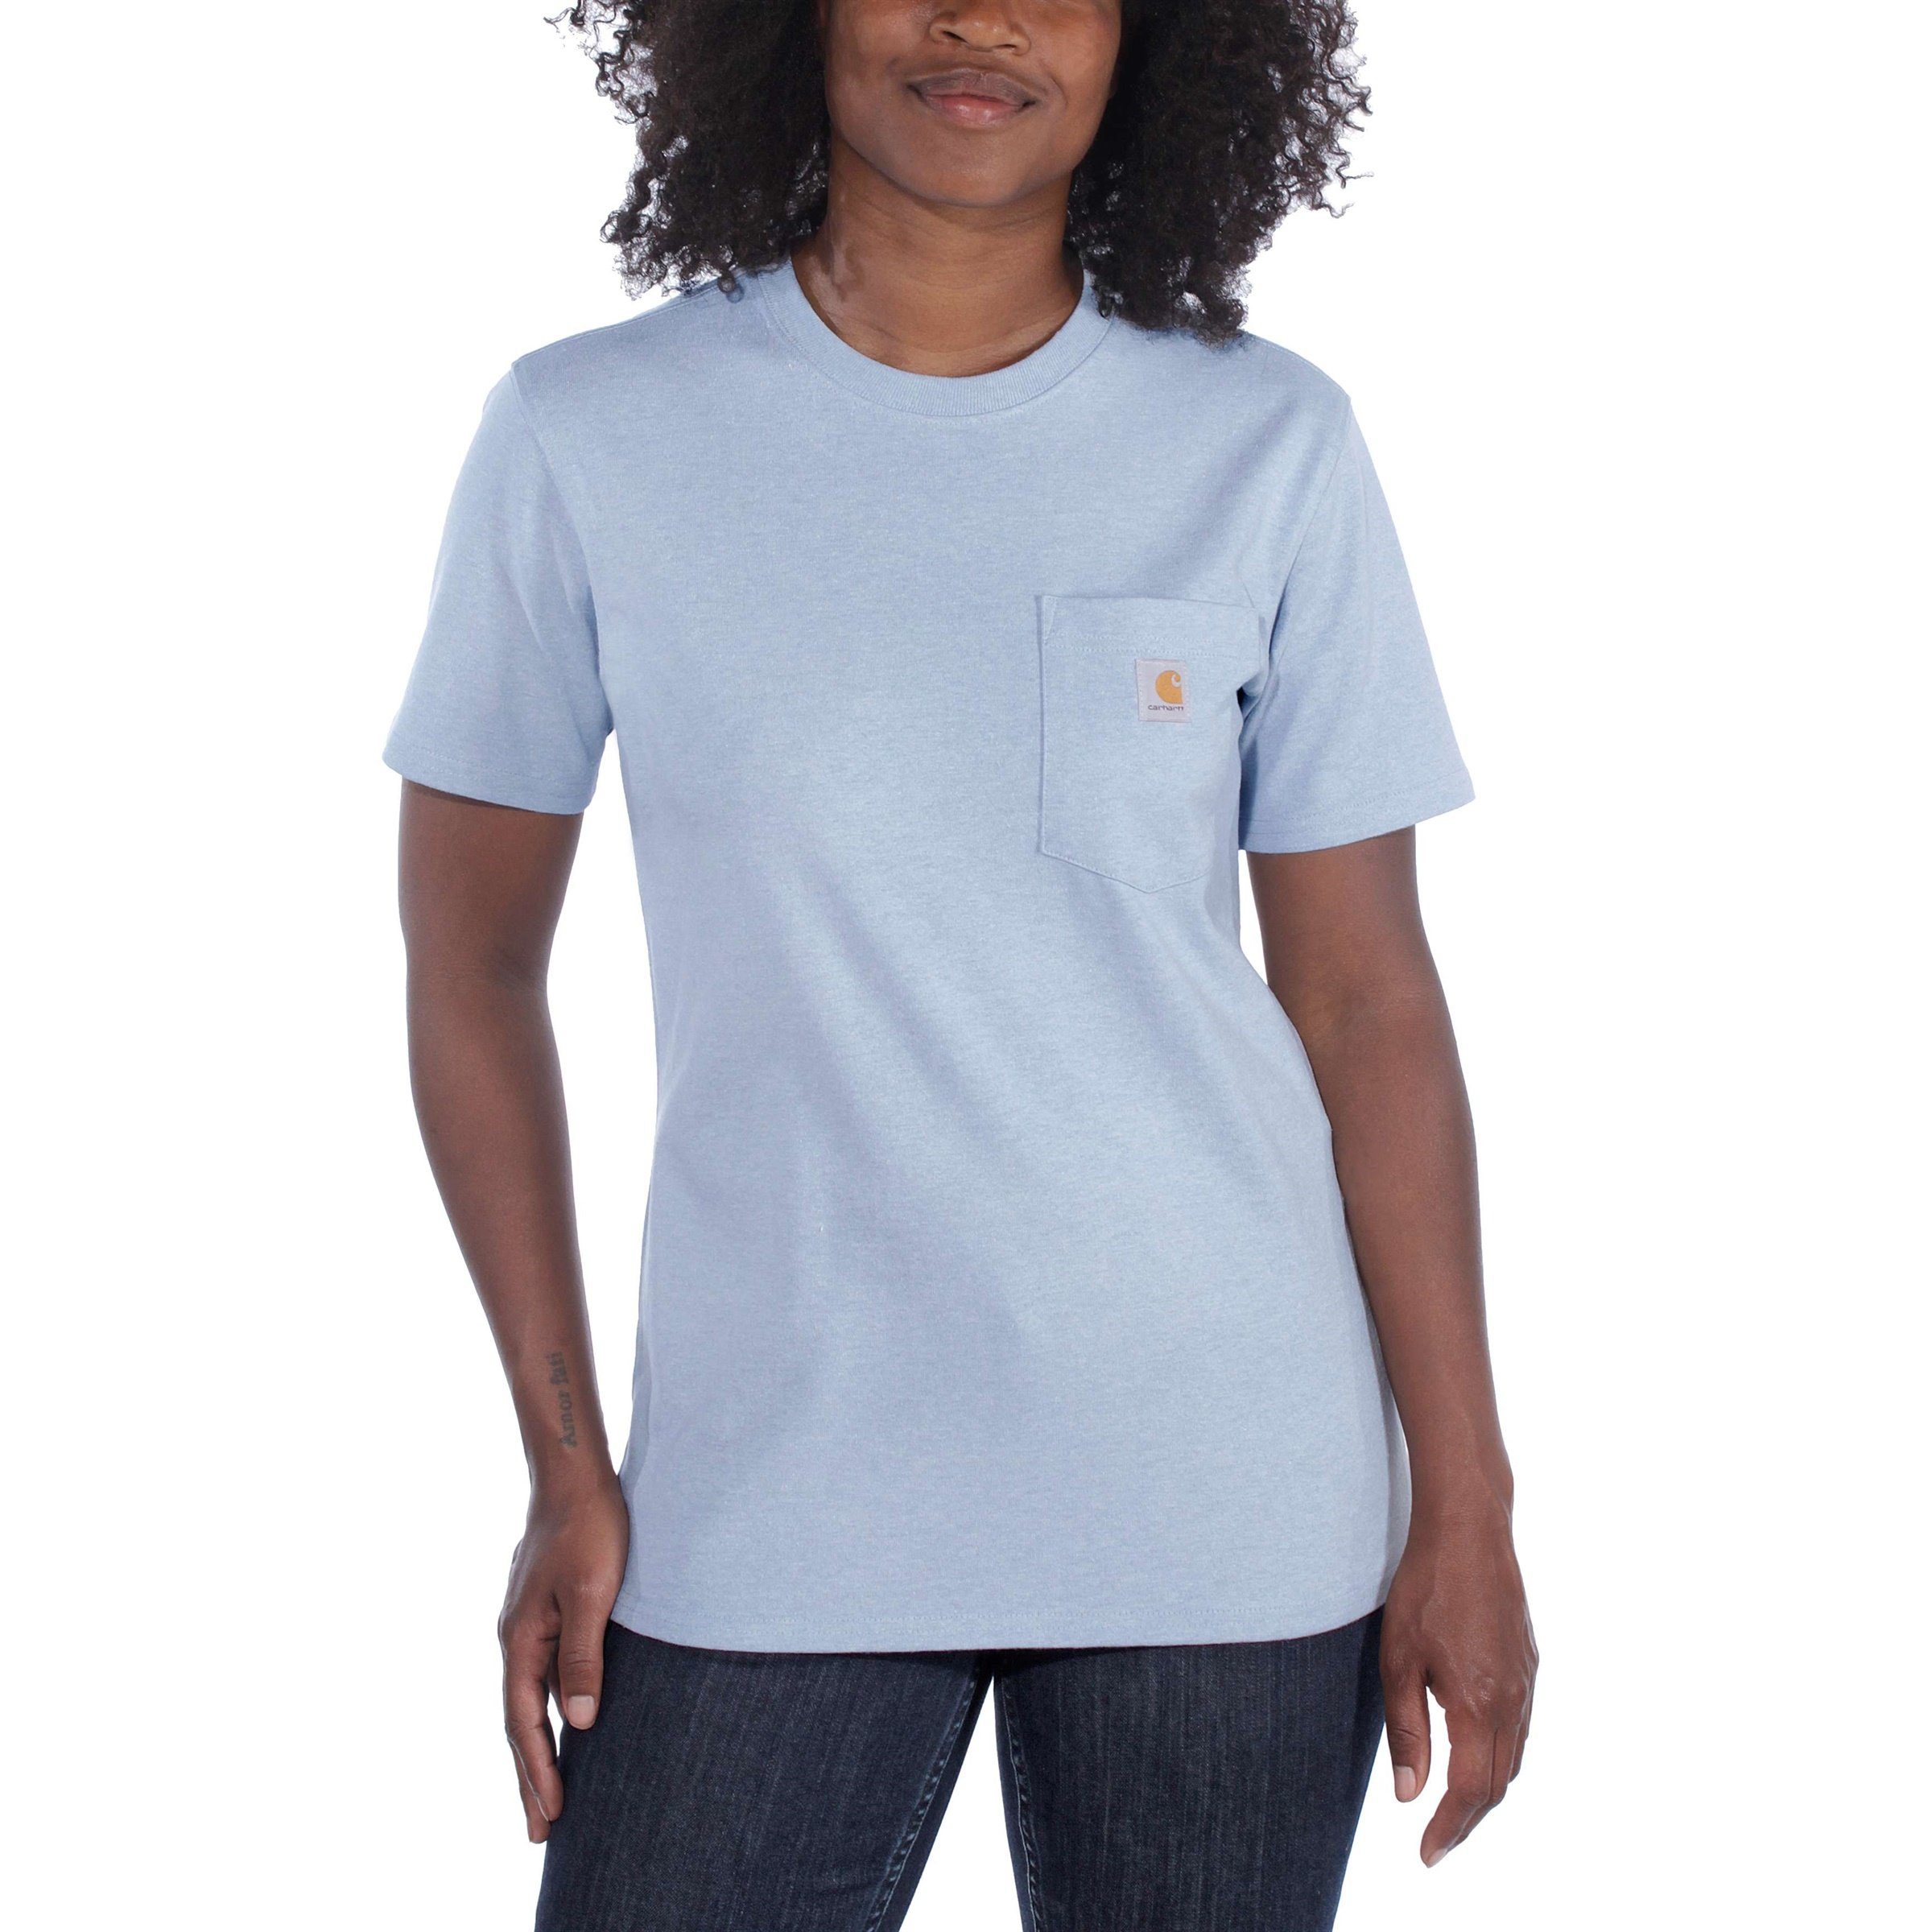 Carhartt T-Shirt Carhartt Damen T-Shirt Short-Sleeve heather Loose Heavyweight jade Adult Pocket Fit